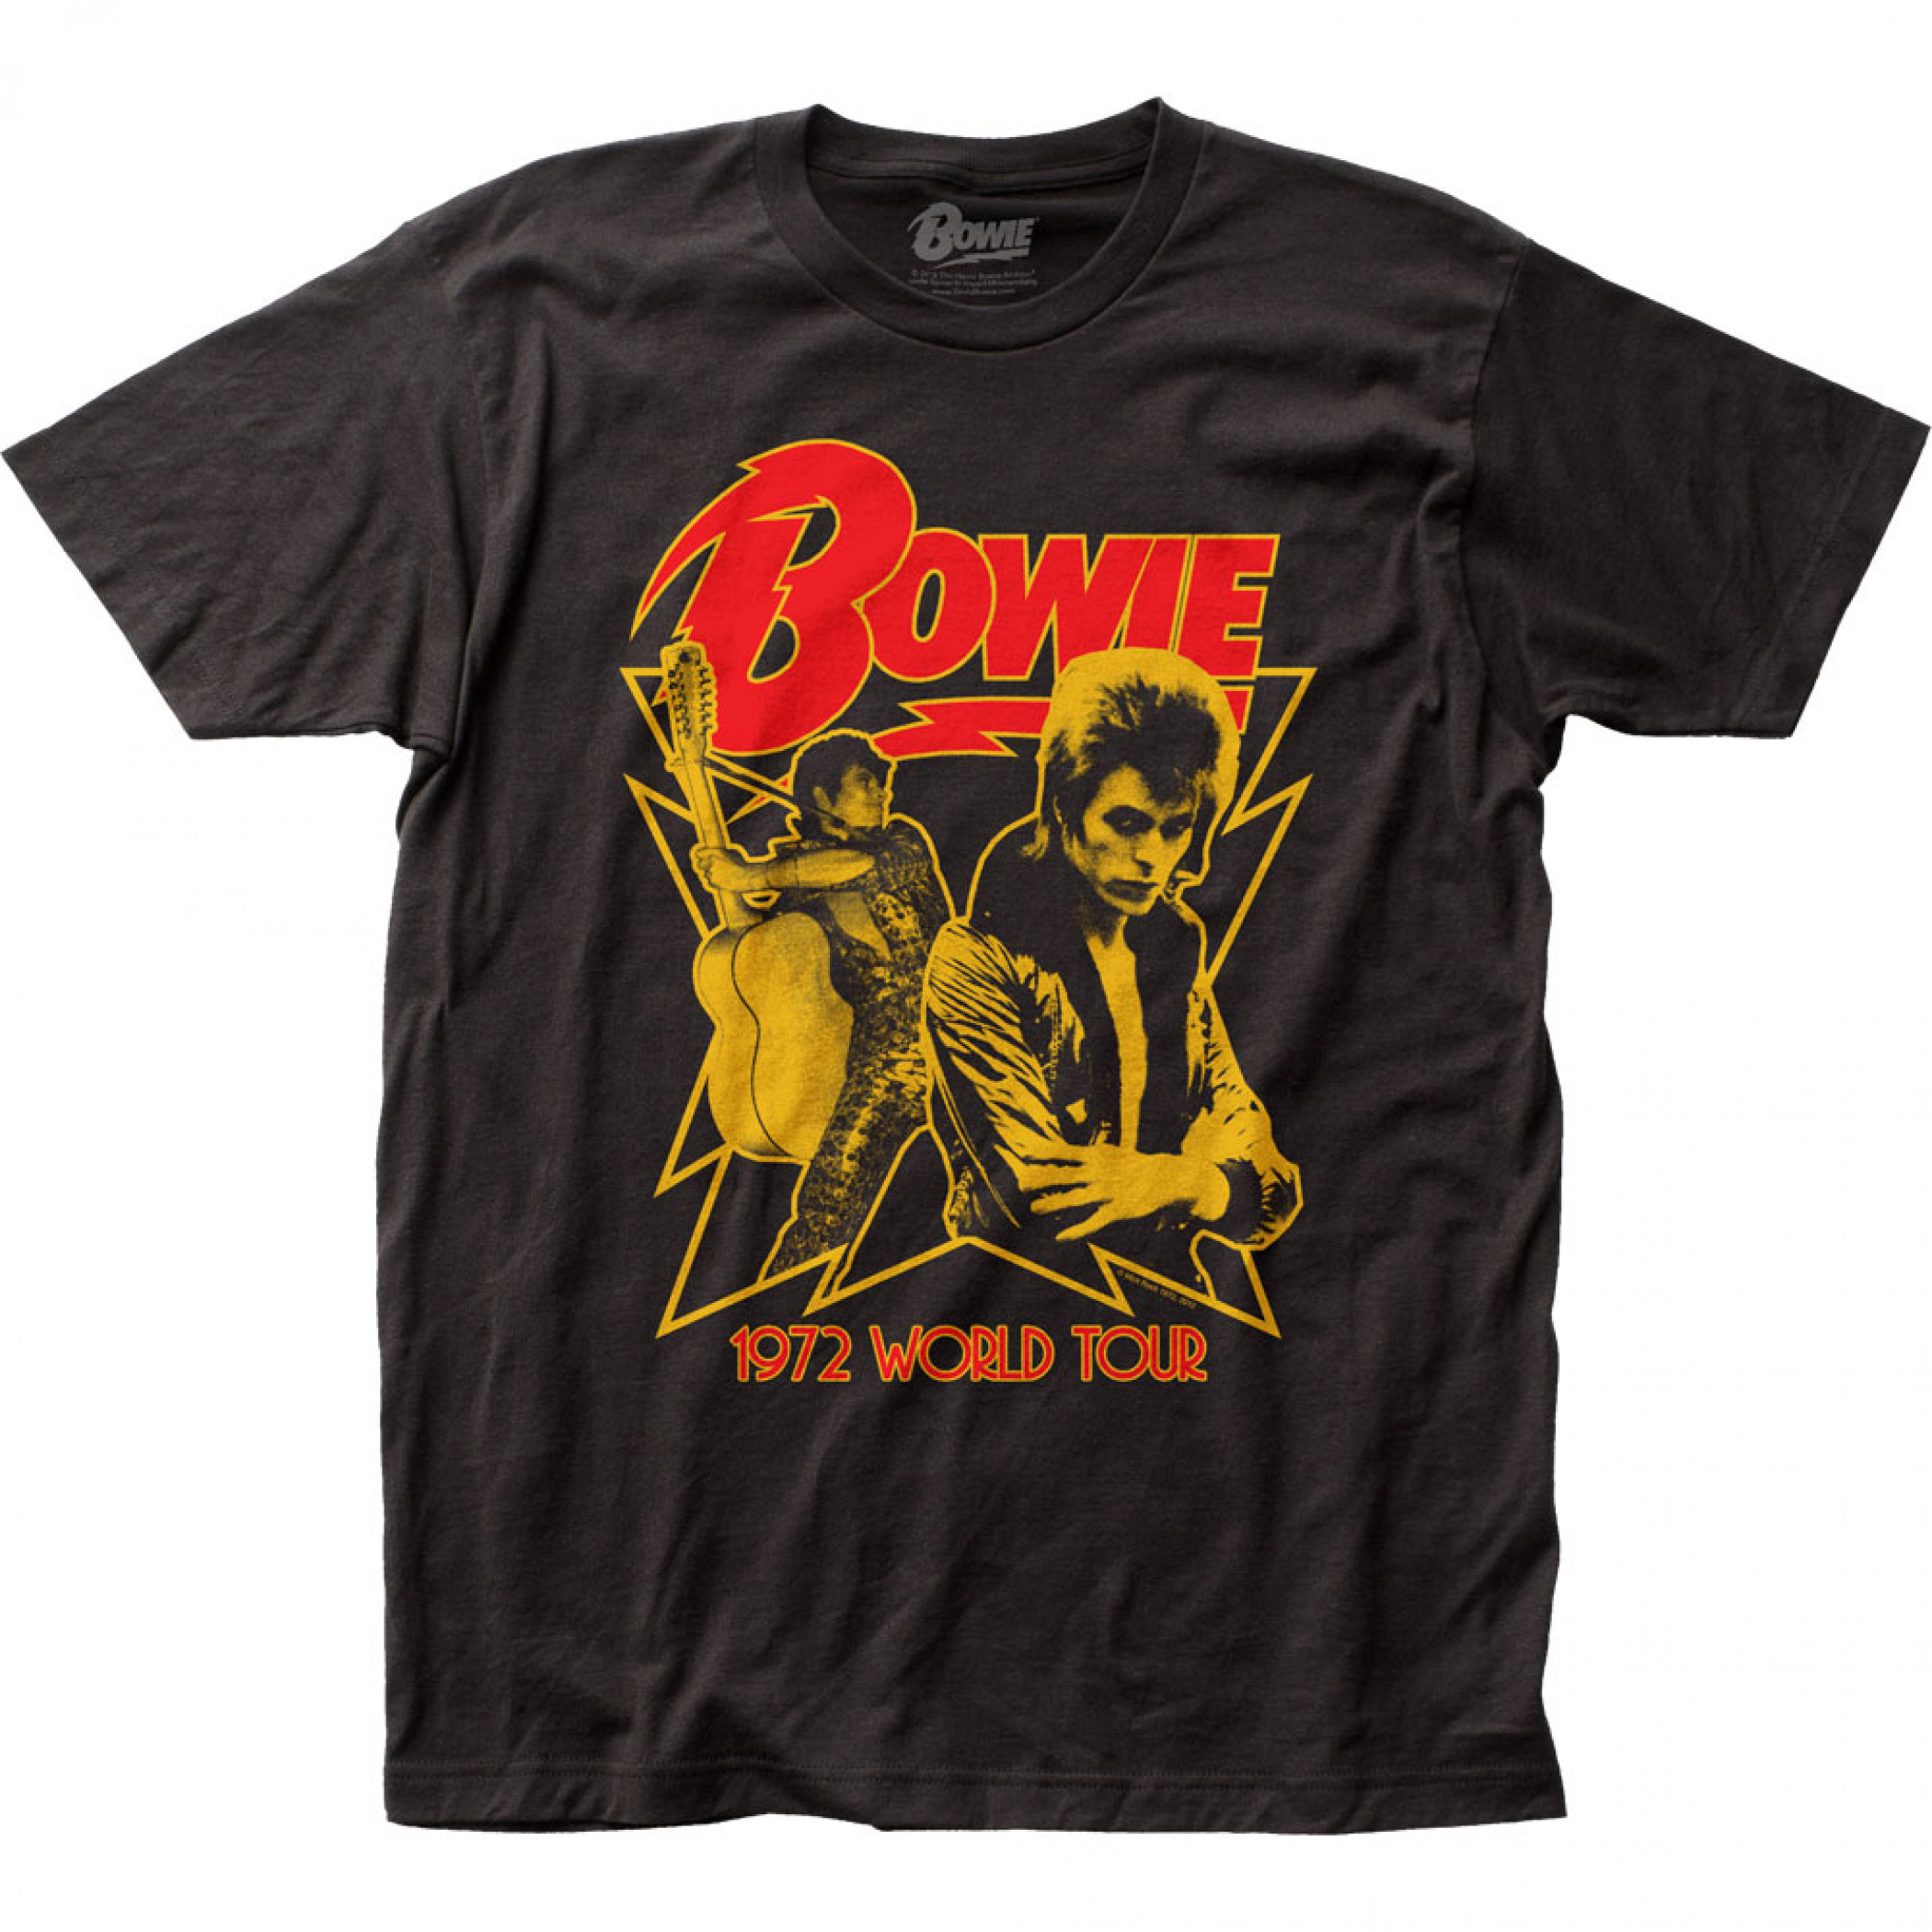 david bowie 1972 world tour t shirt